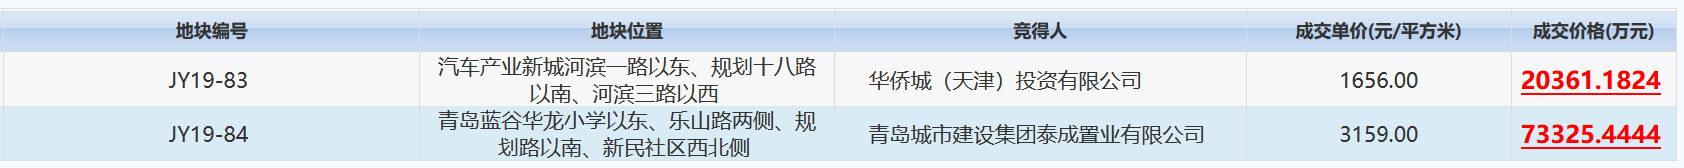 山东青岛9.37亿元出让2宗地块 华侨城2.04亿元摘得一宗-中国网地产